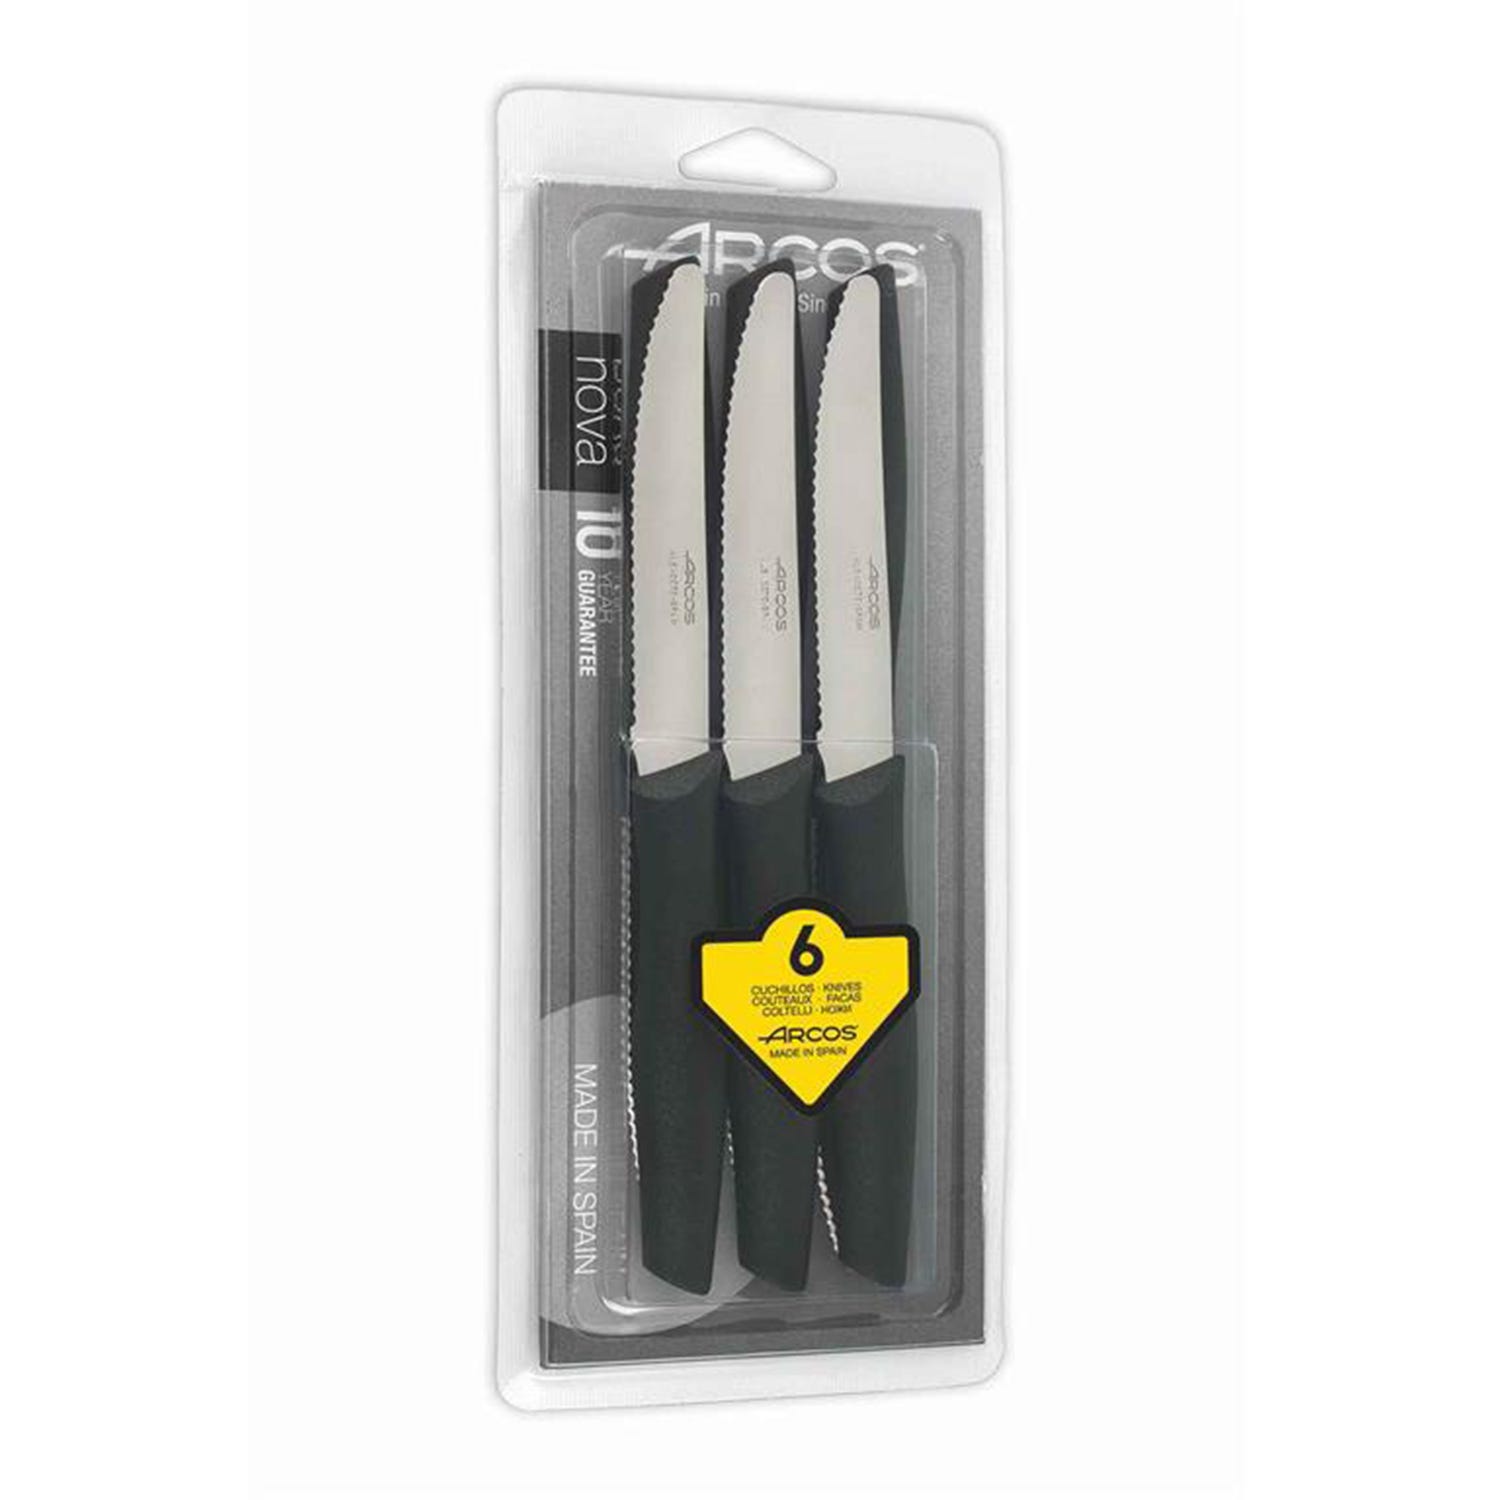 SET DA TAVOLA NOVA - Set di 6 coltelli da tavola con lama seghettata e  punta arrotondata, perfetti per tagliare i cibi a tavola.